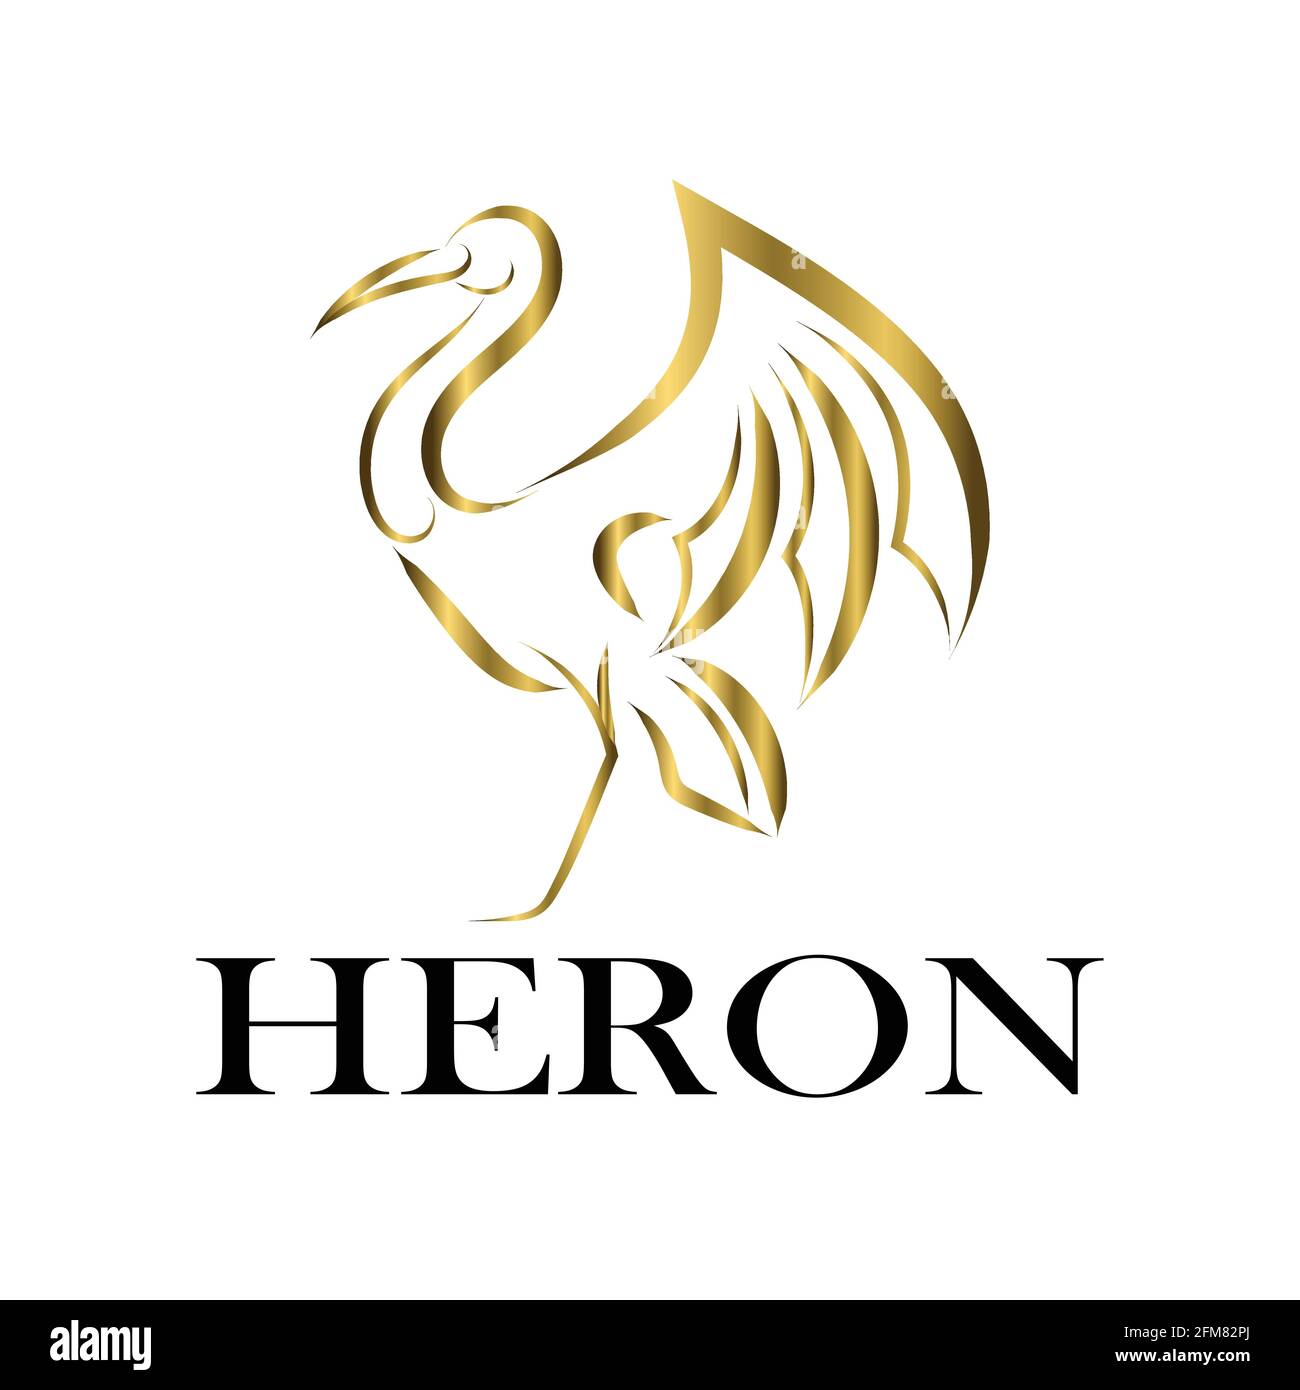 Gold Line art vector logo of heron that is standing. Stock Vector